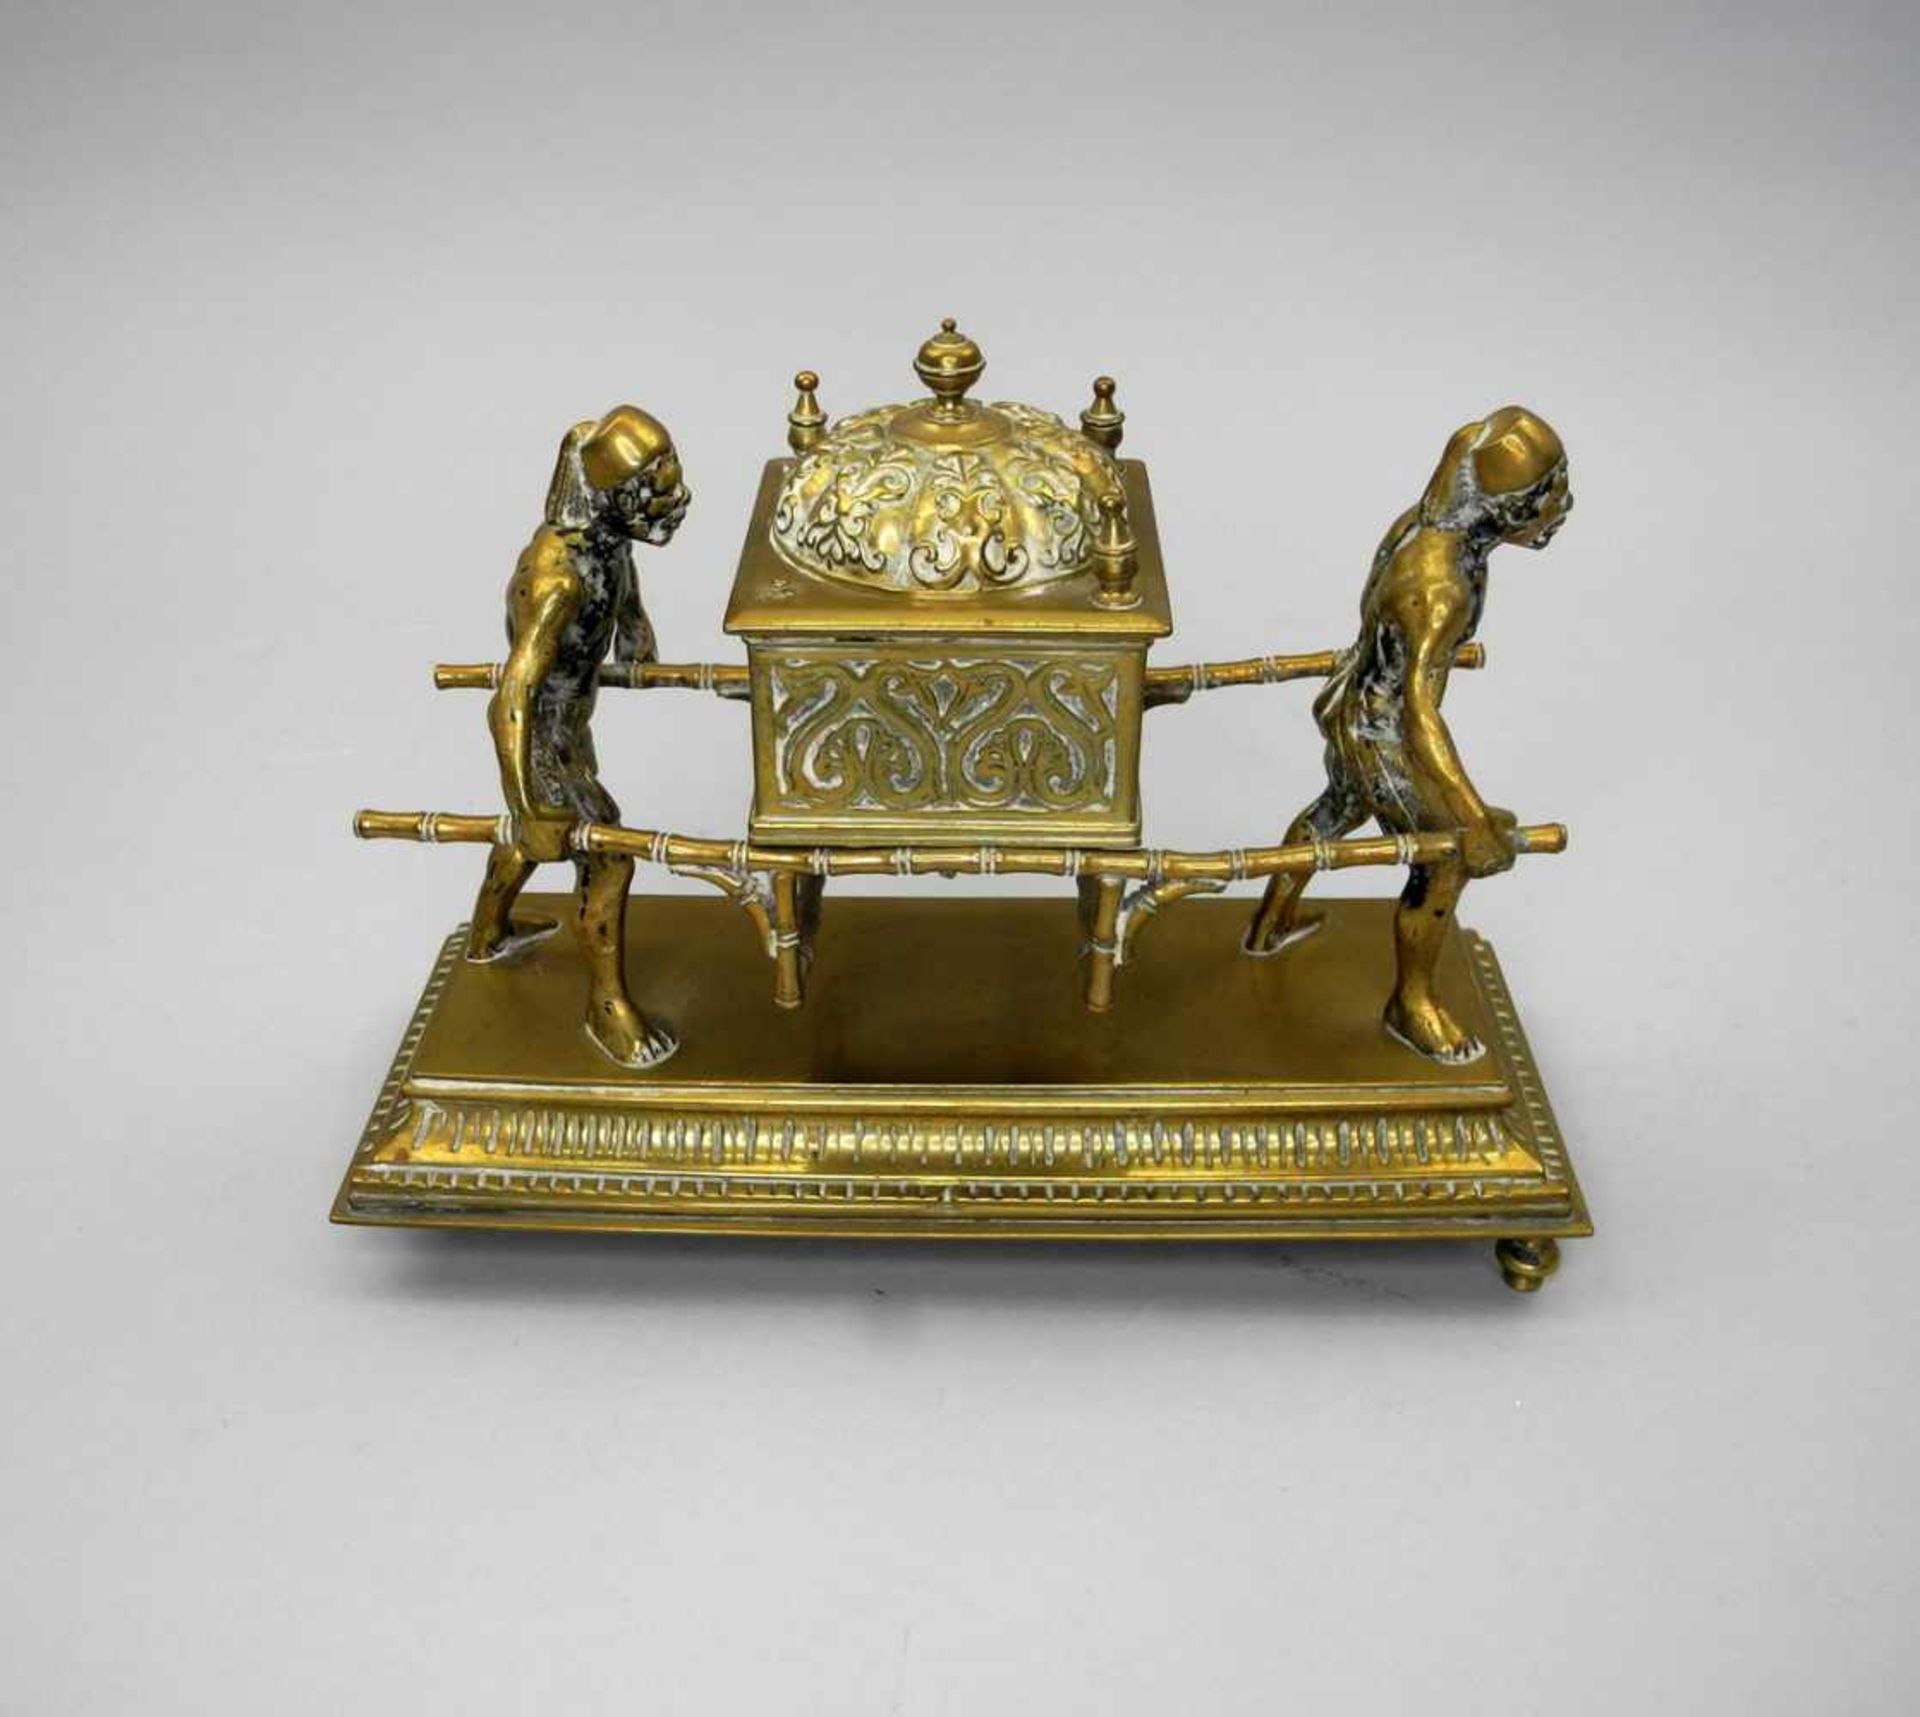 Orientalische SänftenfigurBonze, golden patiniert. Orientalisische Sänfte mit Trägern auf